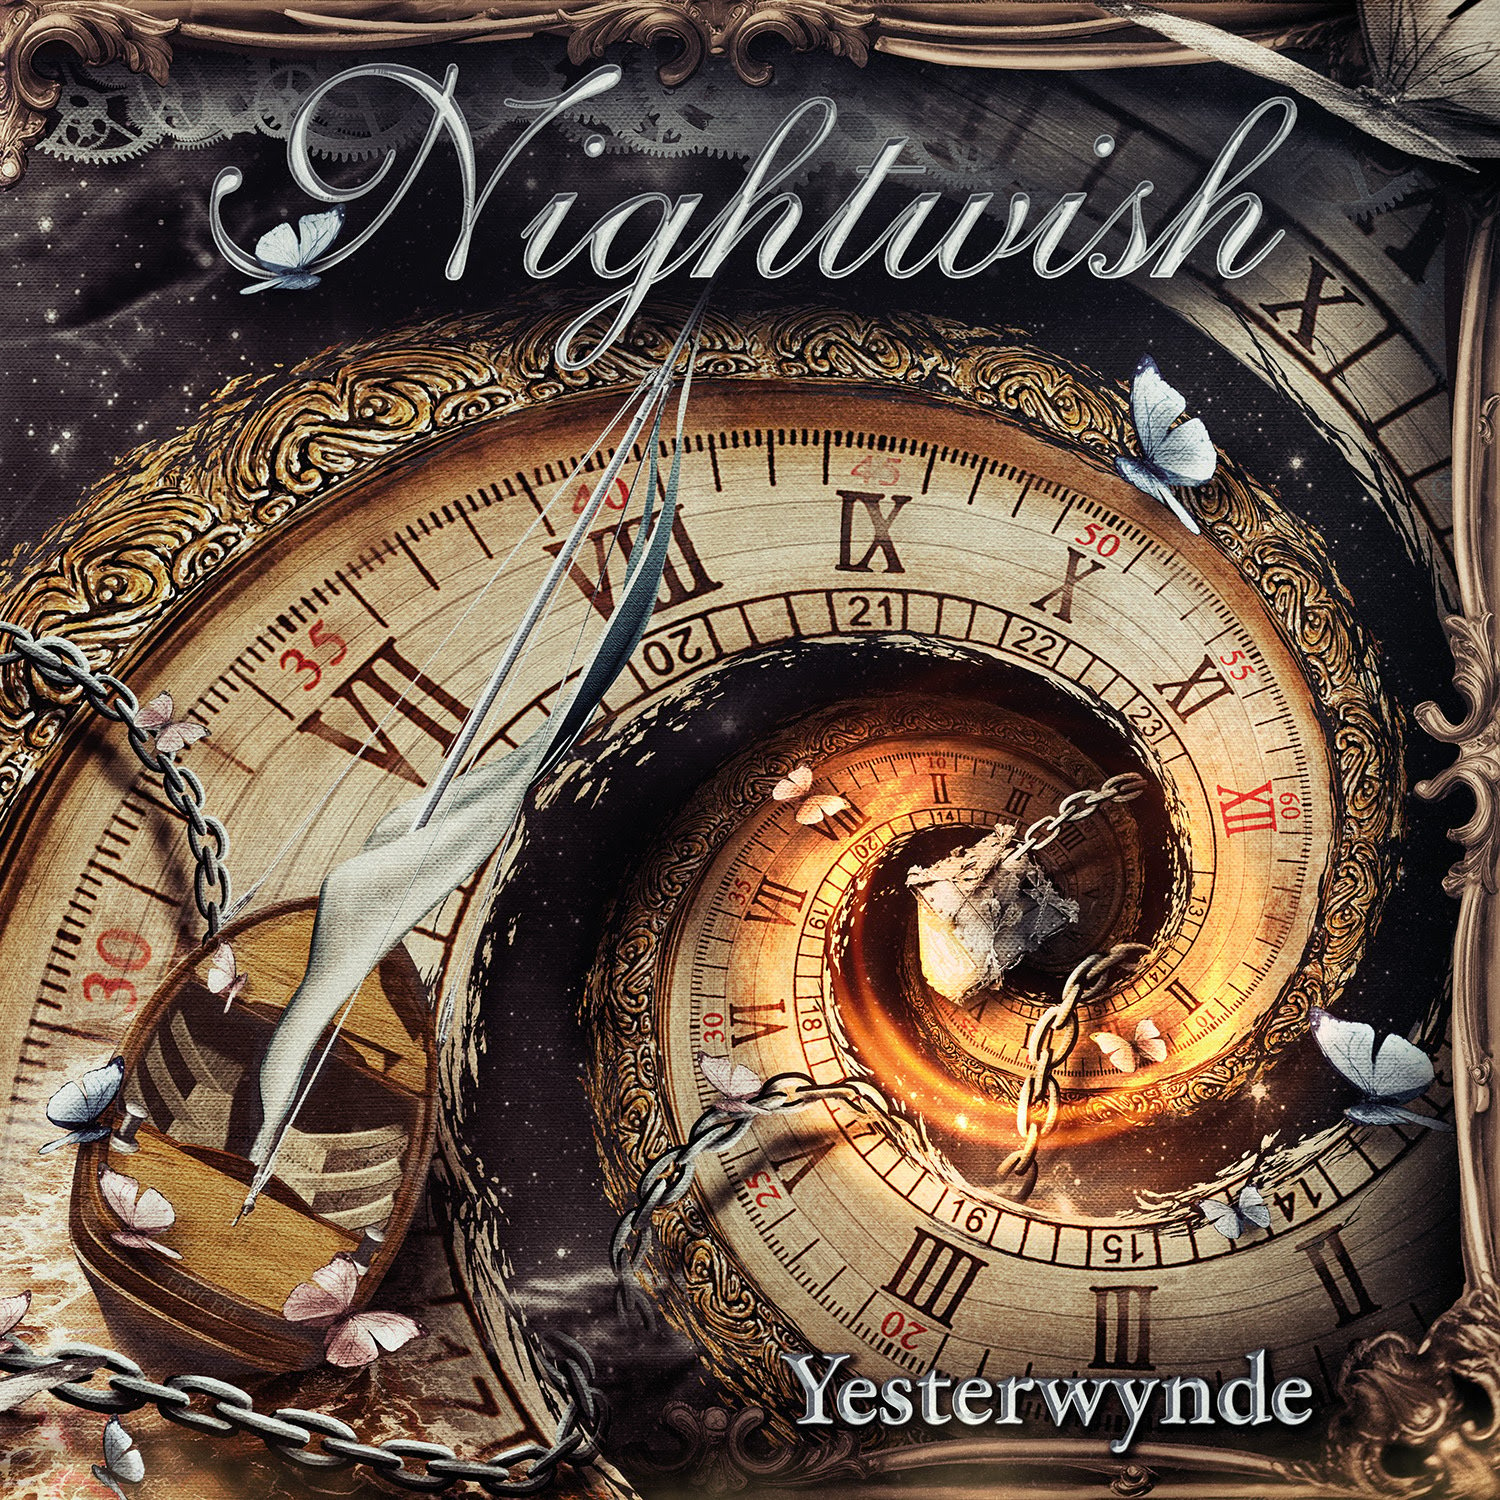 massiivisia nightwish-uutisia! uuden levyn nimi, kansitaide, julkaisupäivä ja kappalelista julki